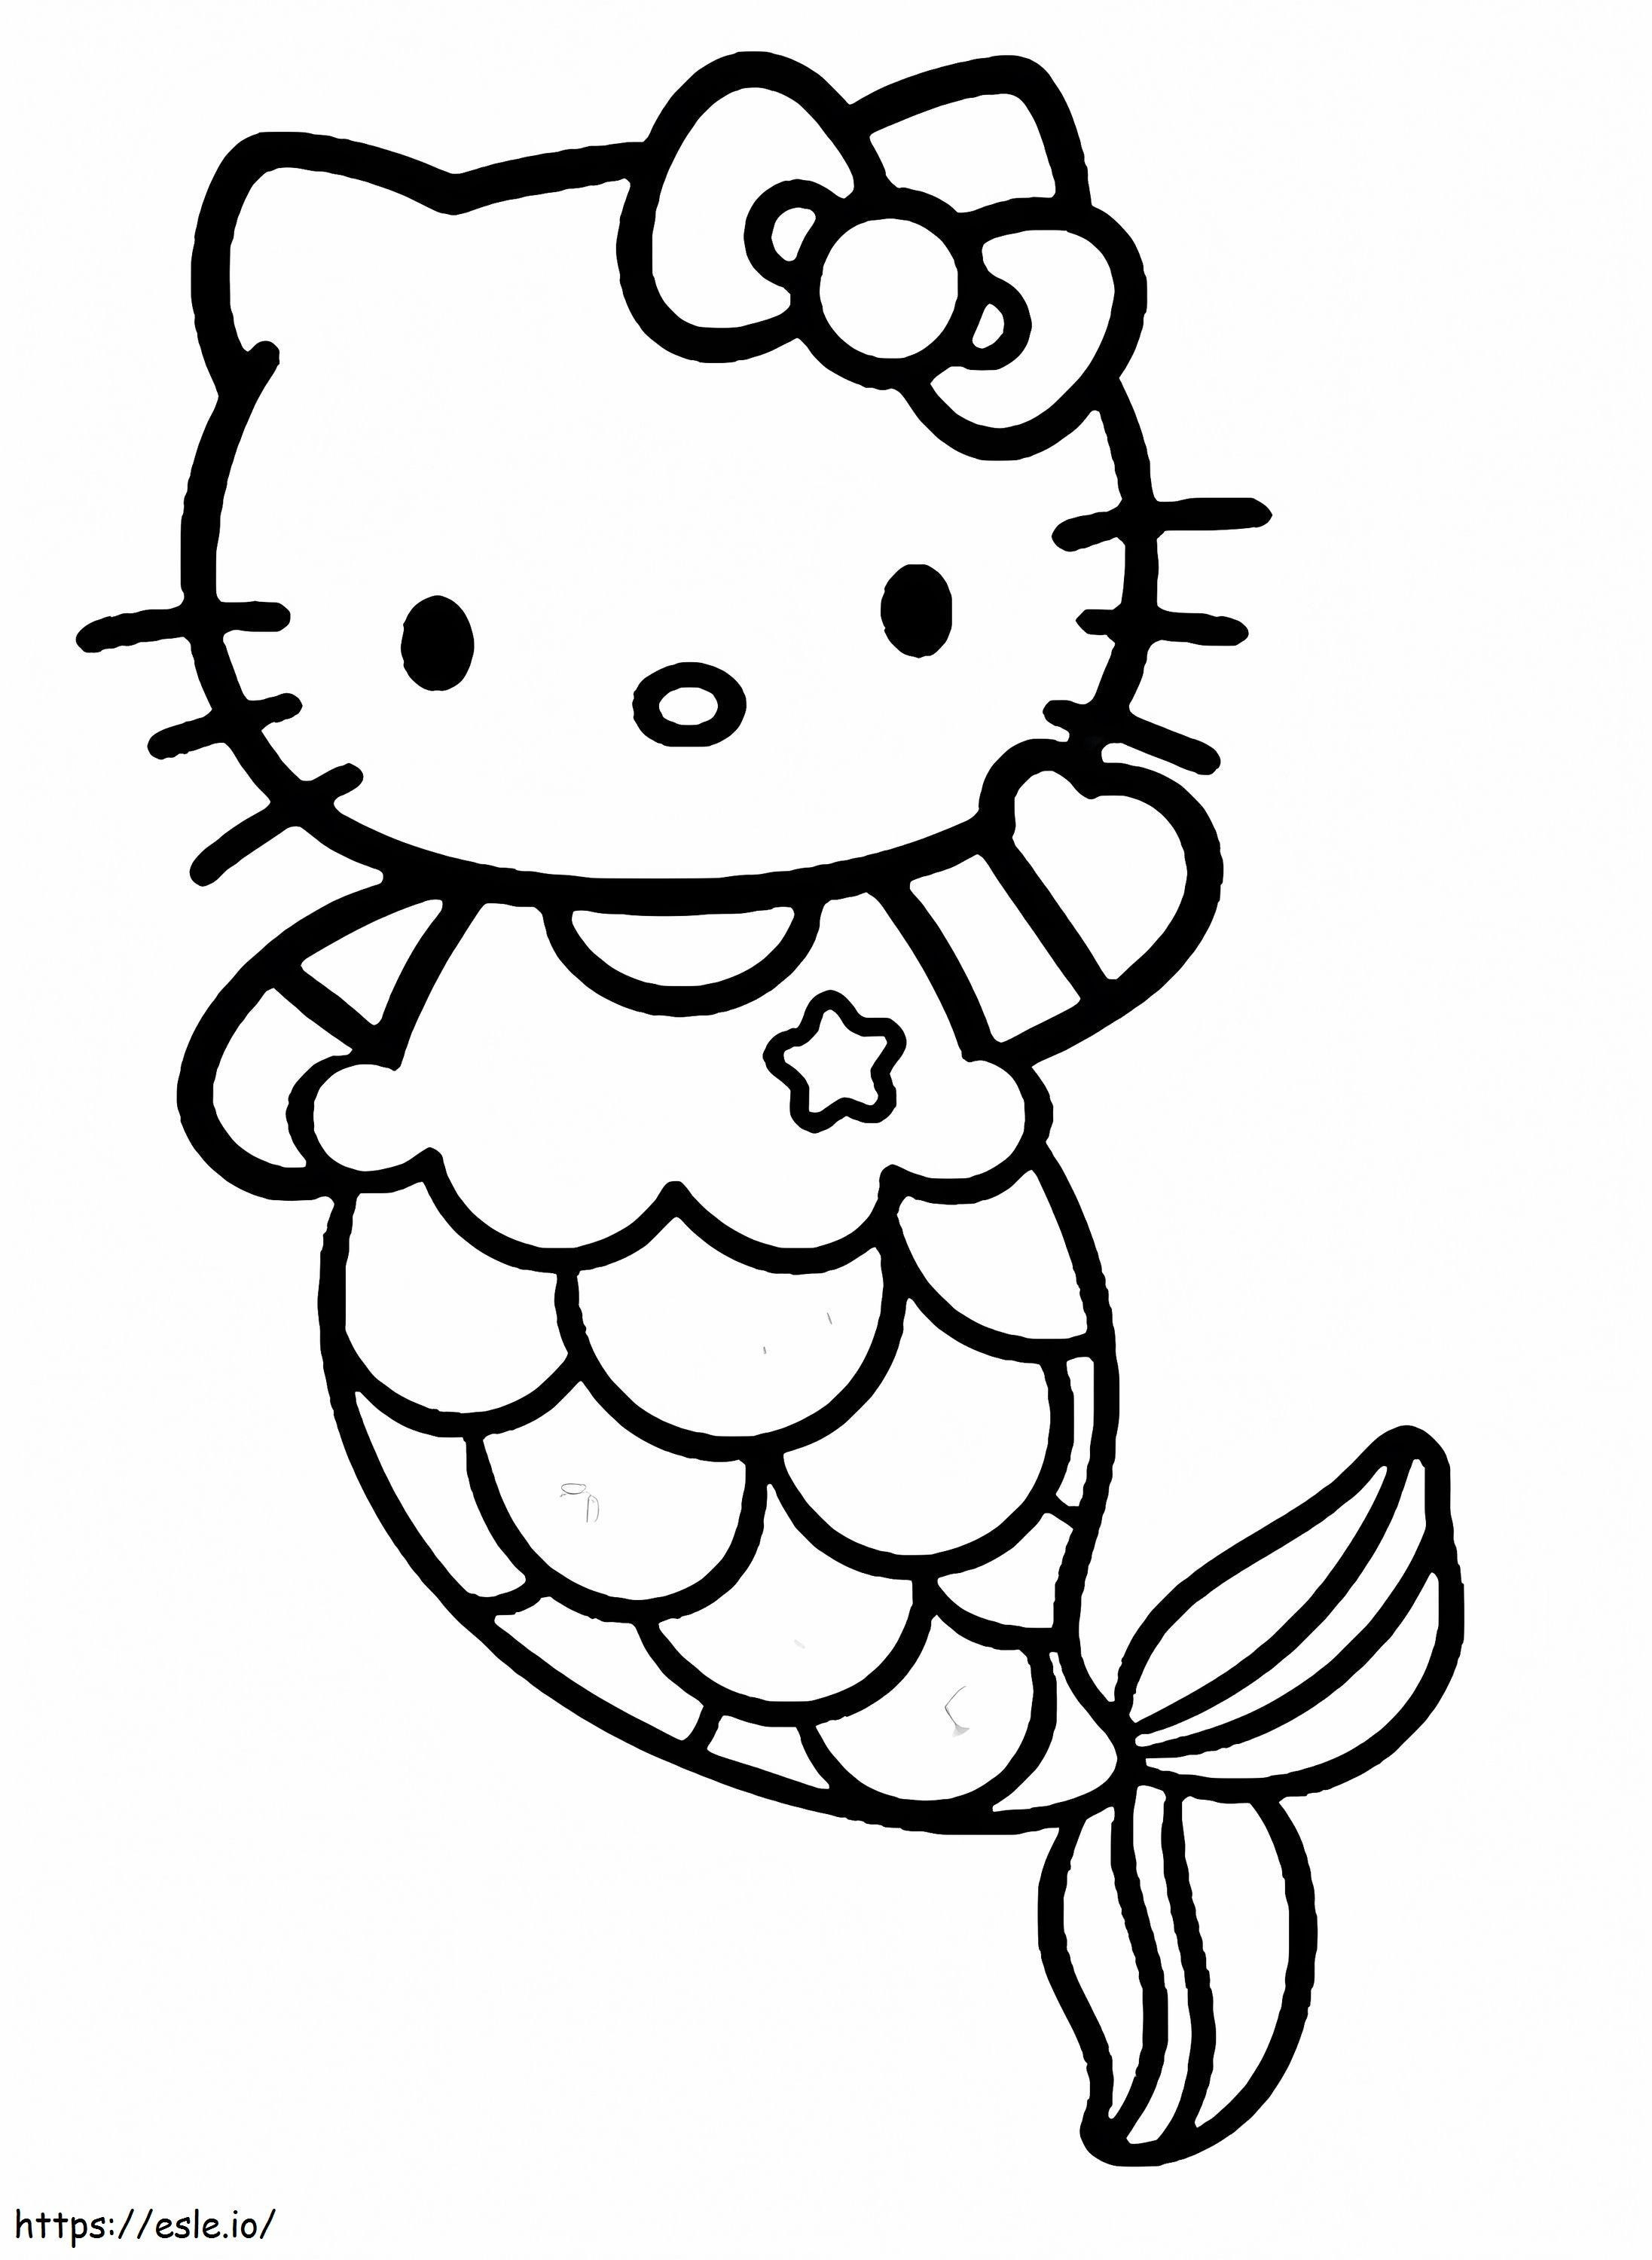 Sirena Hello Kitty stampabile da colorare